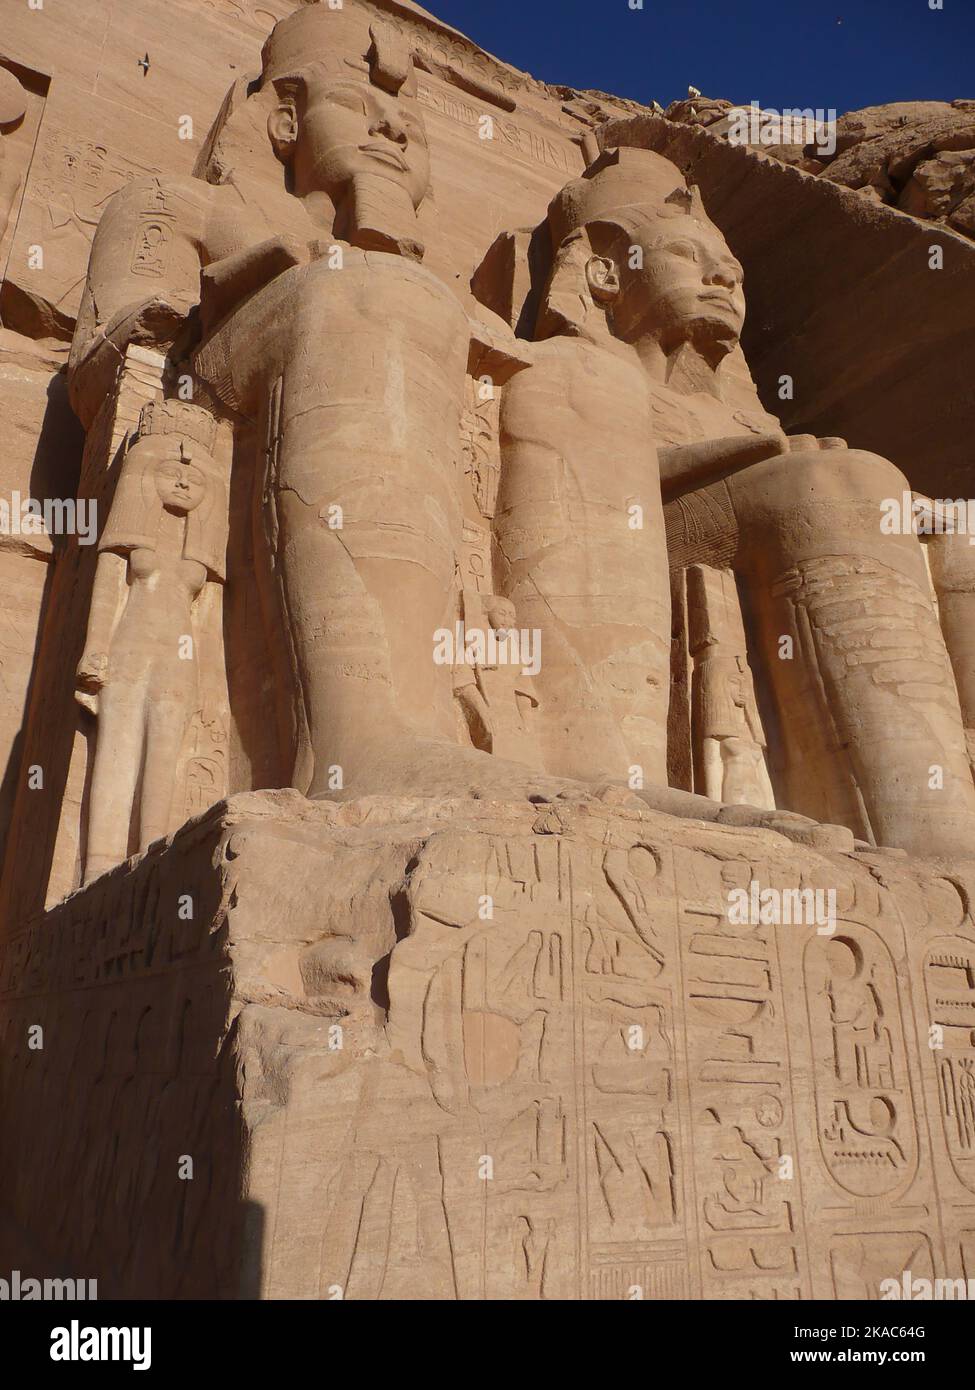 Abu Simbel es un emplazamiento de inter s arqueol gico que se compone de templos egipcios ubicado en Nubia, al sur de Egipto. Est localizado en la rib Stock Photo